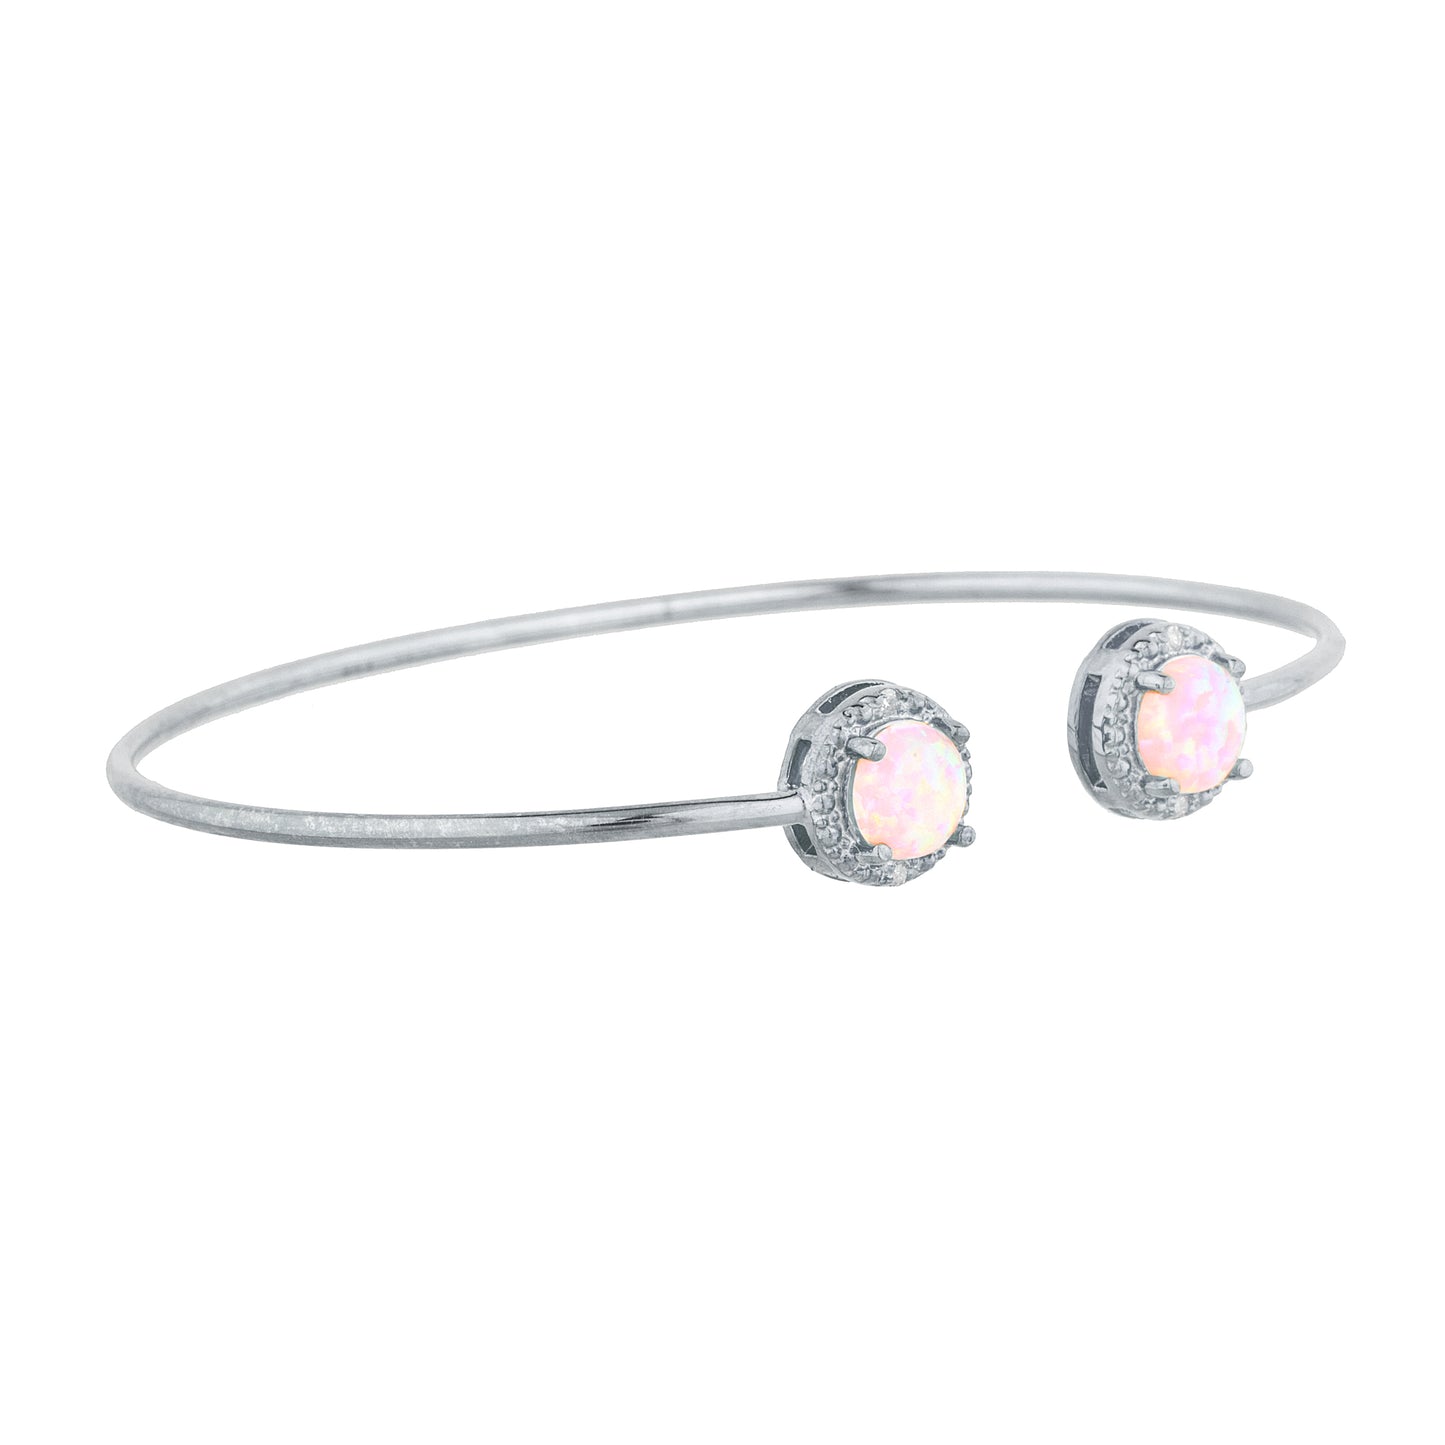 14Kt Gold Pink Opal & Diamond Round Bangle Bracelet